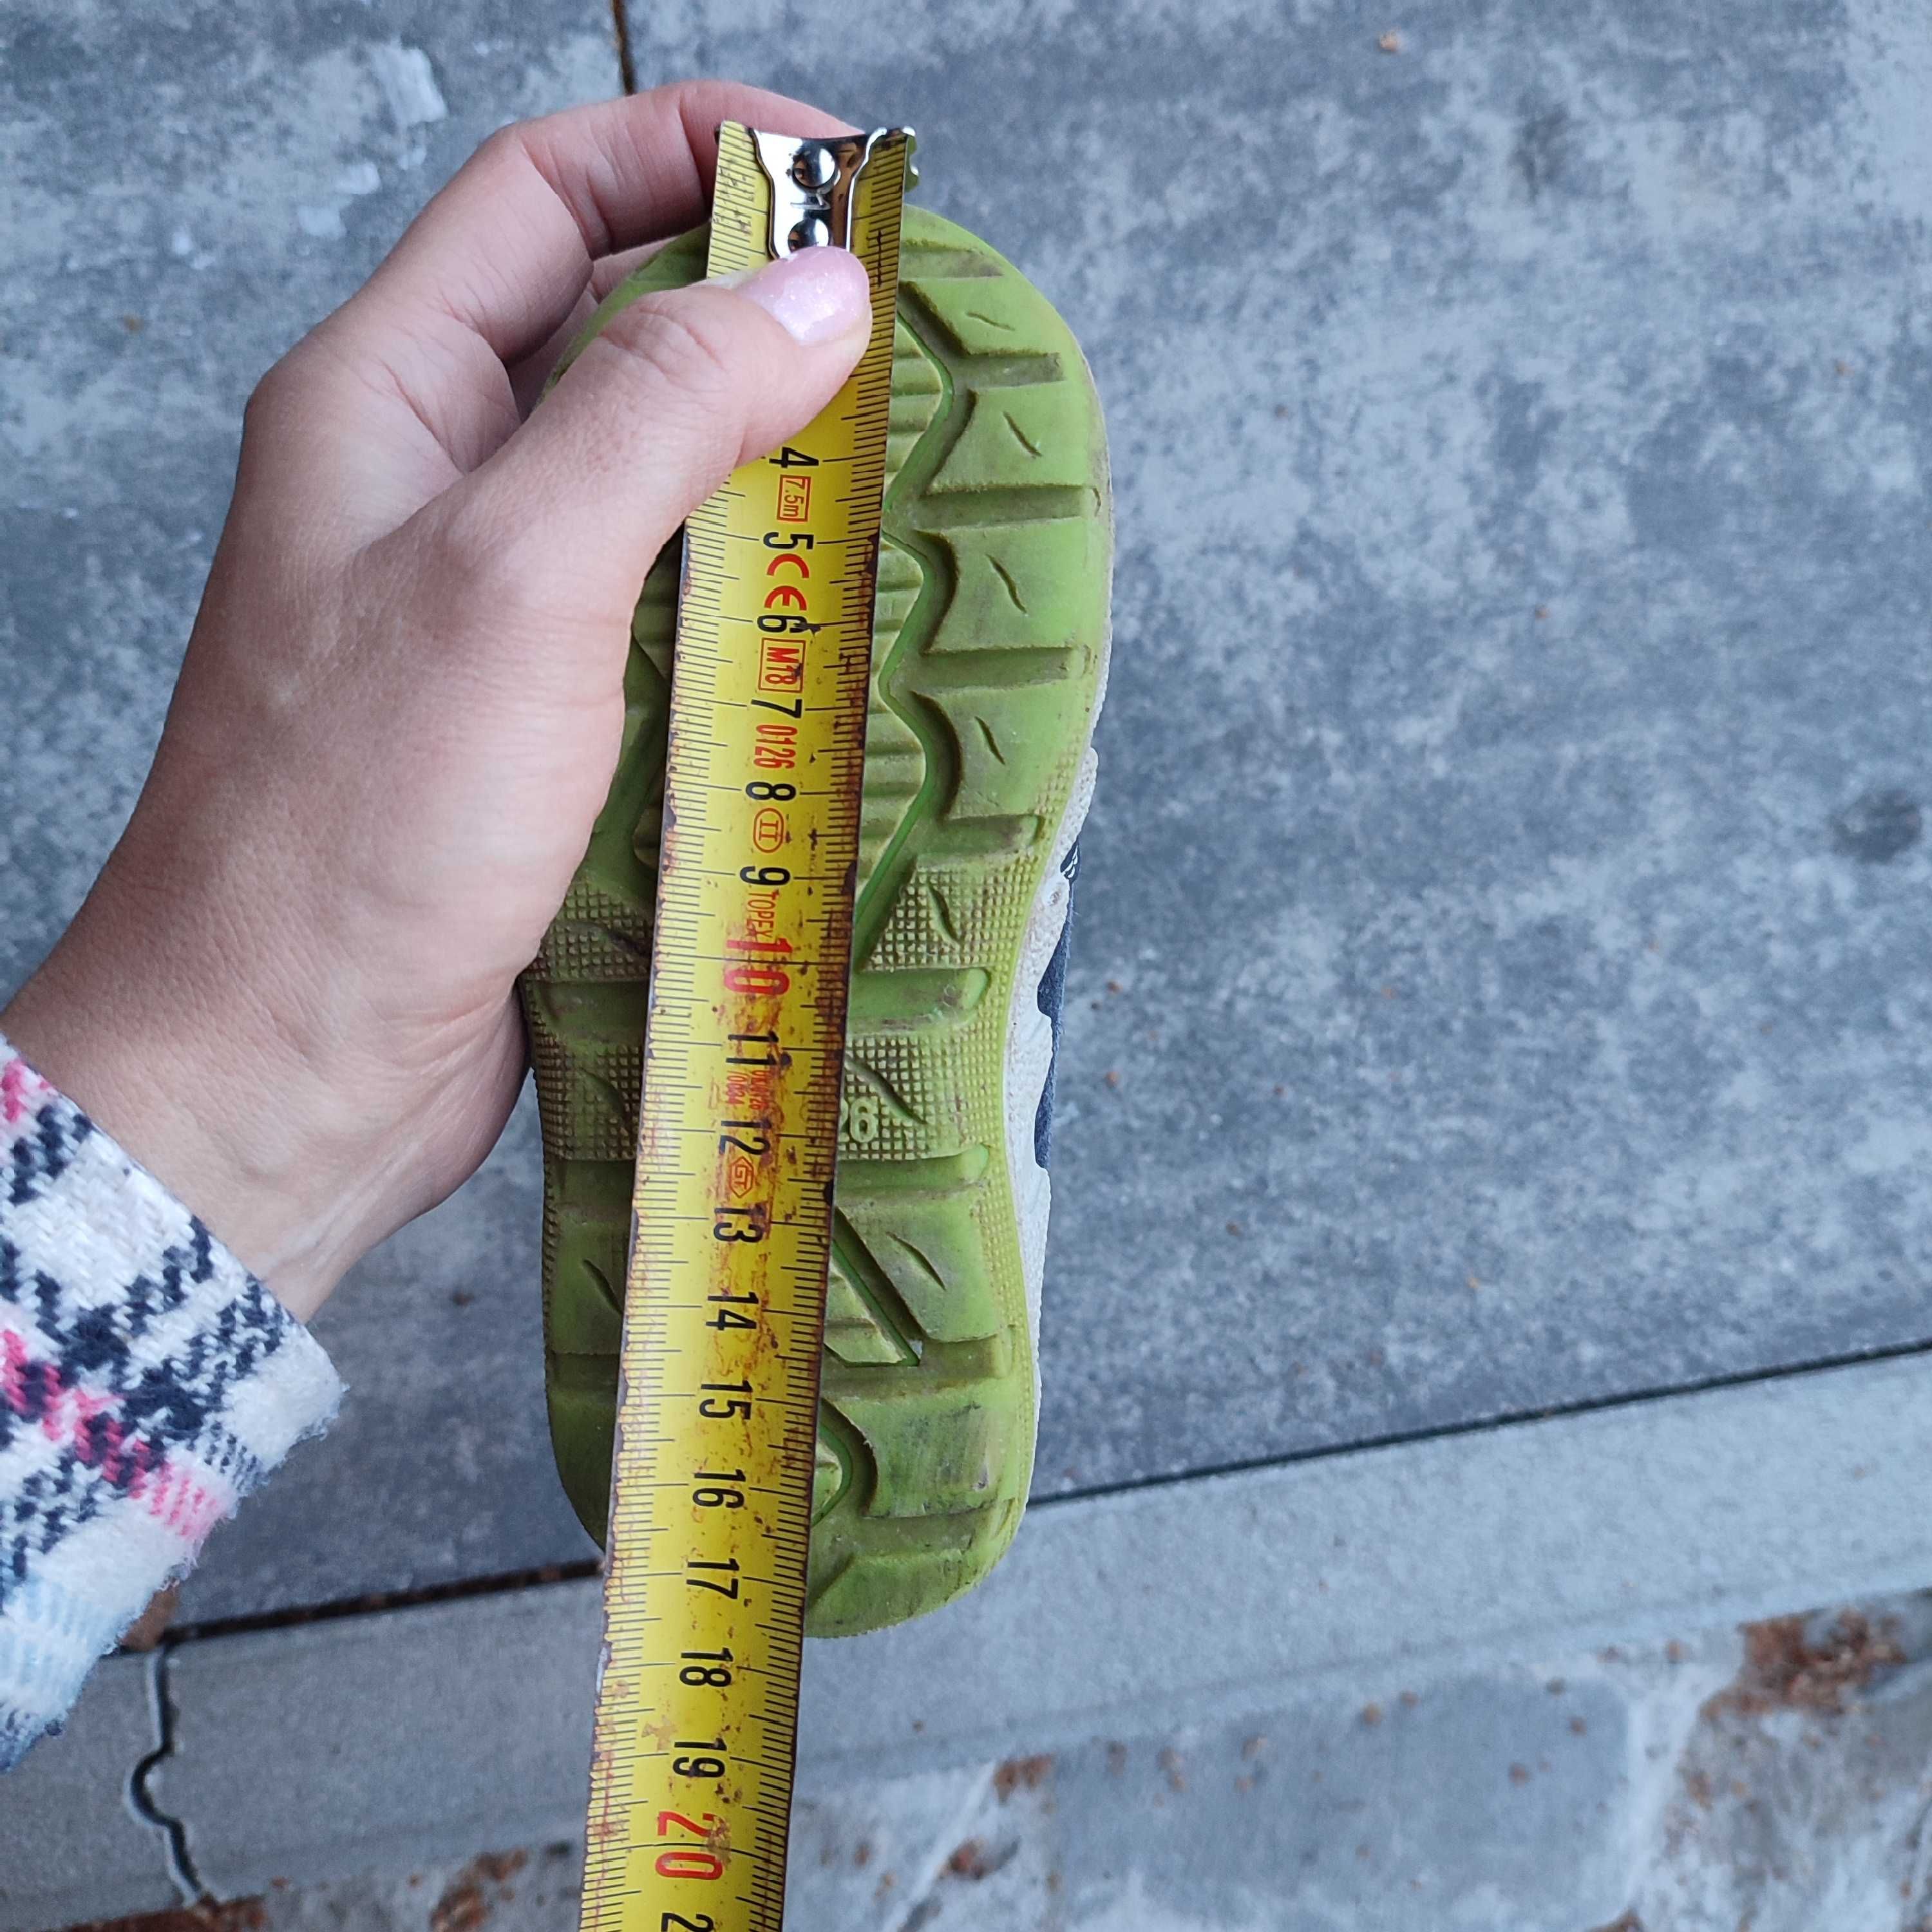 Buty jesienno-zimowe Supwrfit, rozmiar 26, wkładka 17,5 cm